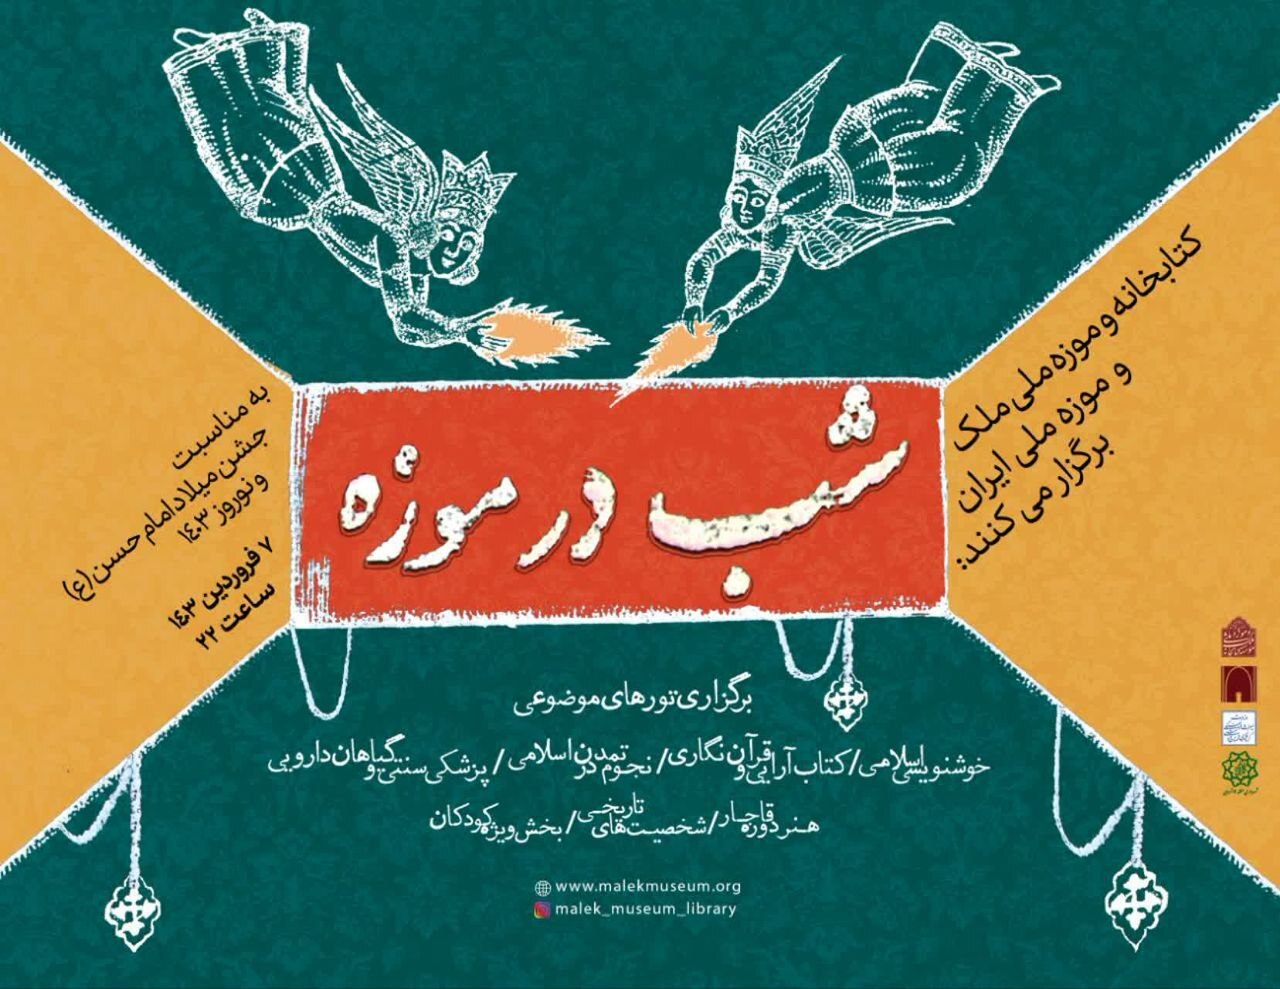 موزه ملی ملک میزبان علاقه مندان در برنامه «شب در موزه»